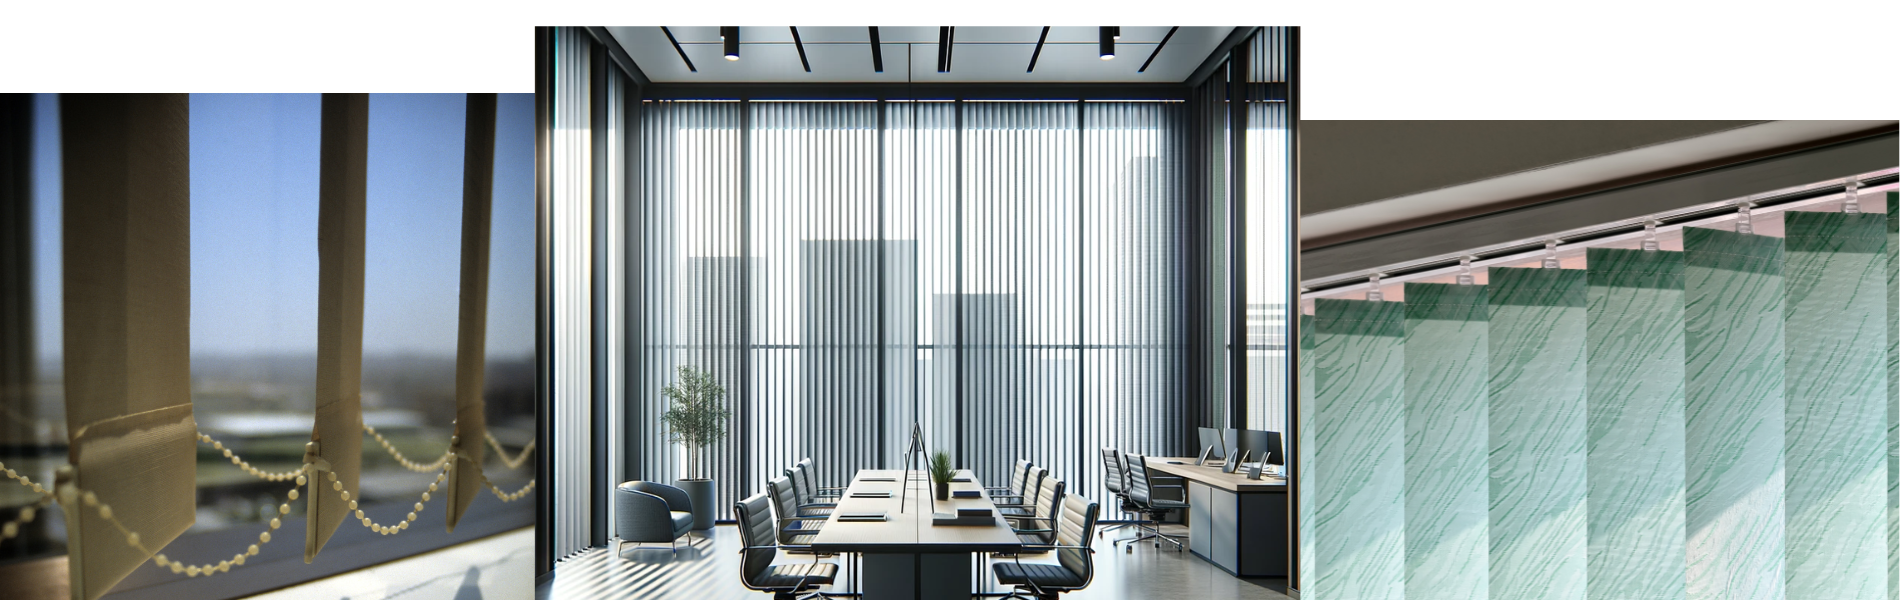 Zdjęcie przedstawia nowoczesne biuro w Łodzi, gdzie duże okna są osłonięte pionowymi żaluzjami (verticale). Te eleganckie żaluzje nie tylko funkcjonalnie zarządzają dostępem światła, ale również dodają przestrzeni profesjonalnego wyglądu, idealnie współgrając z biznesowym charakterem wnętrza.